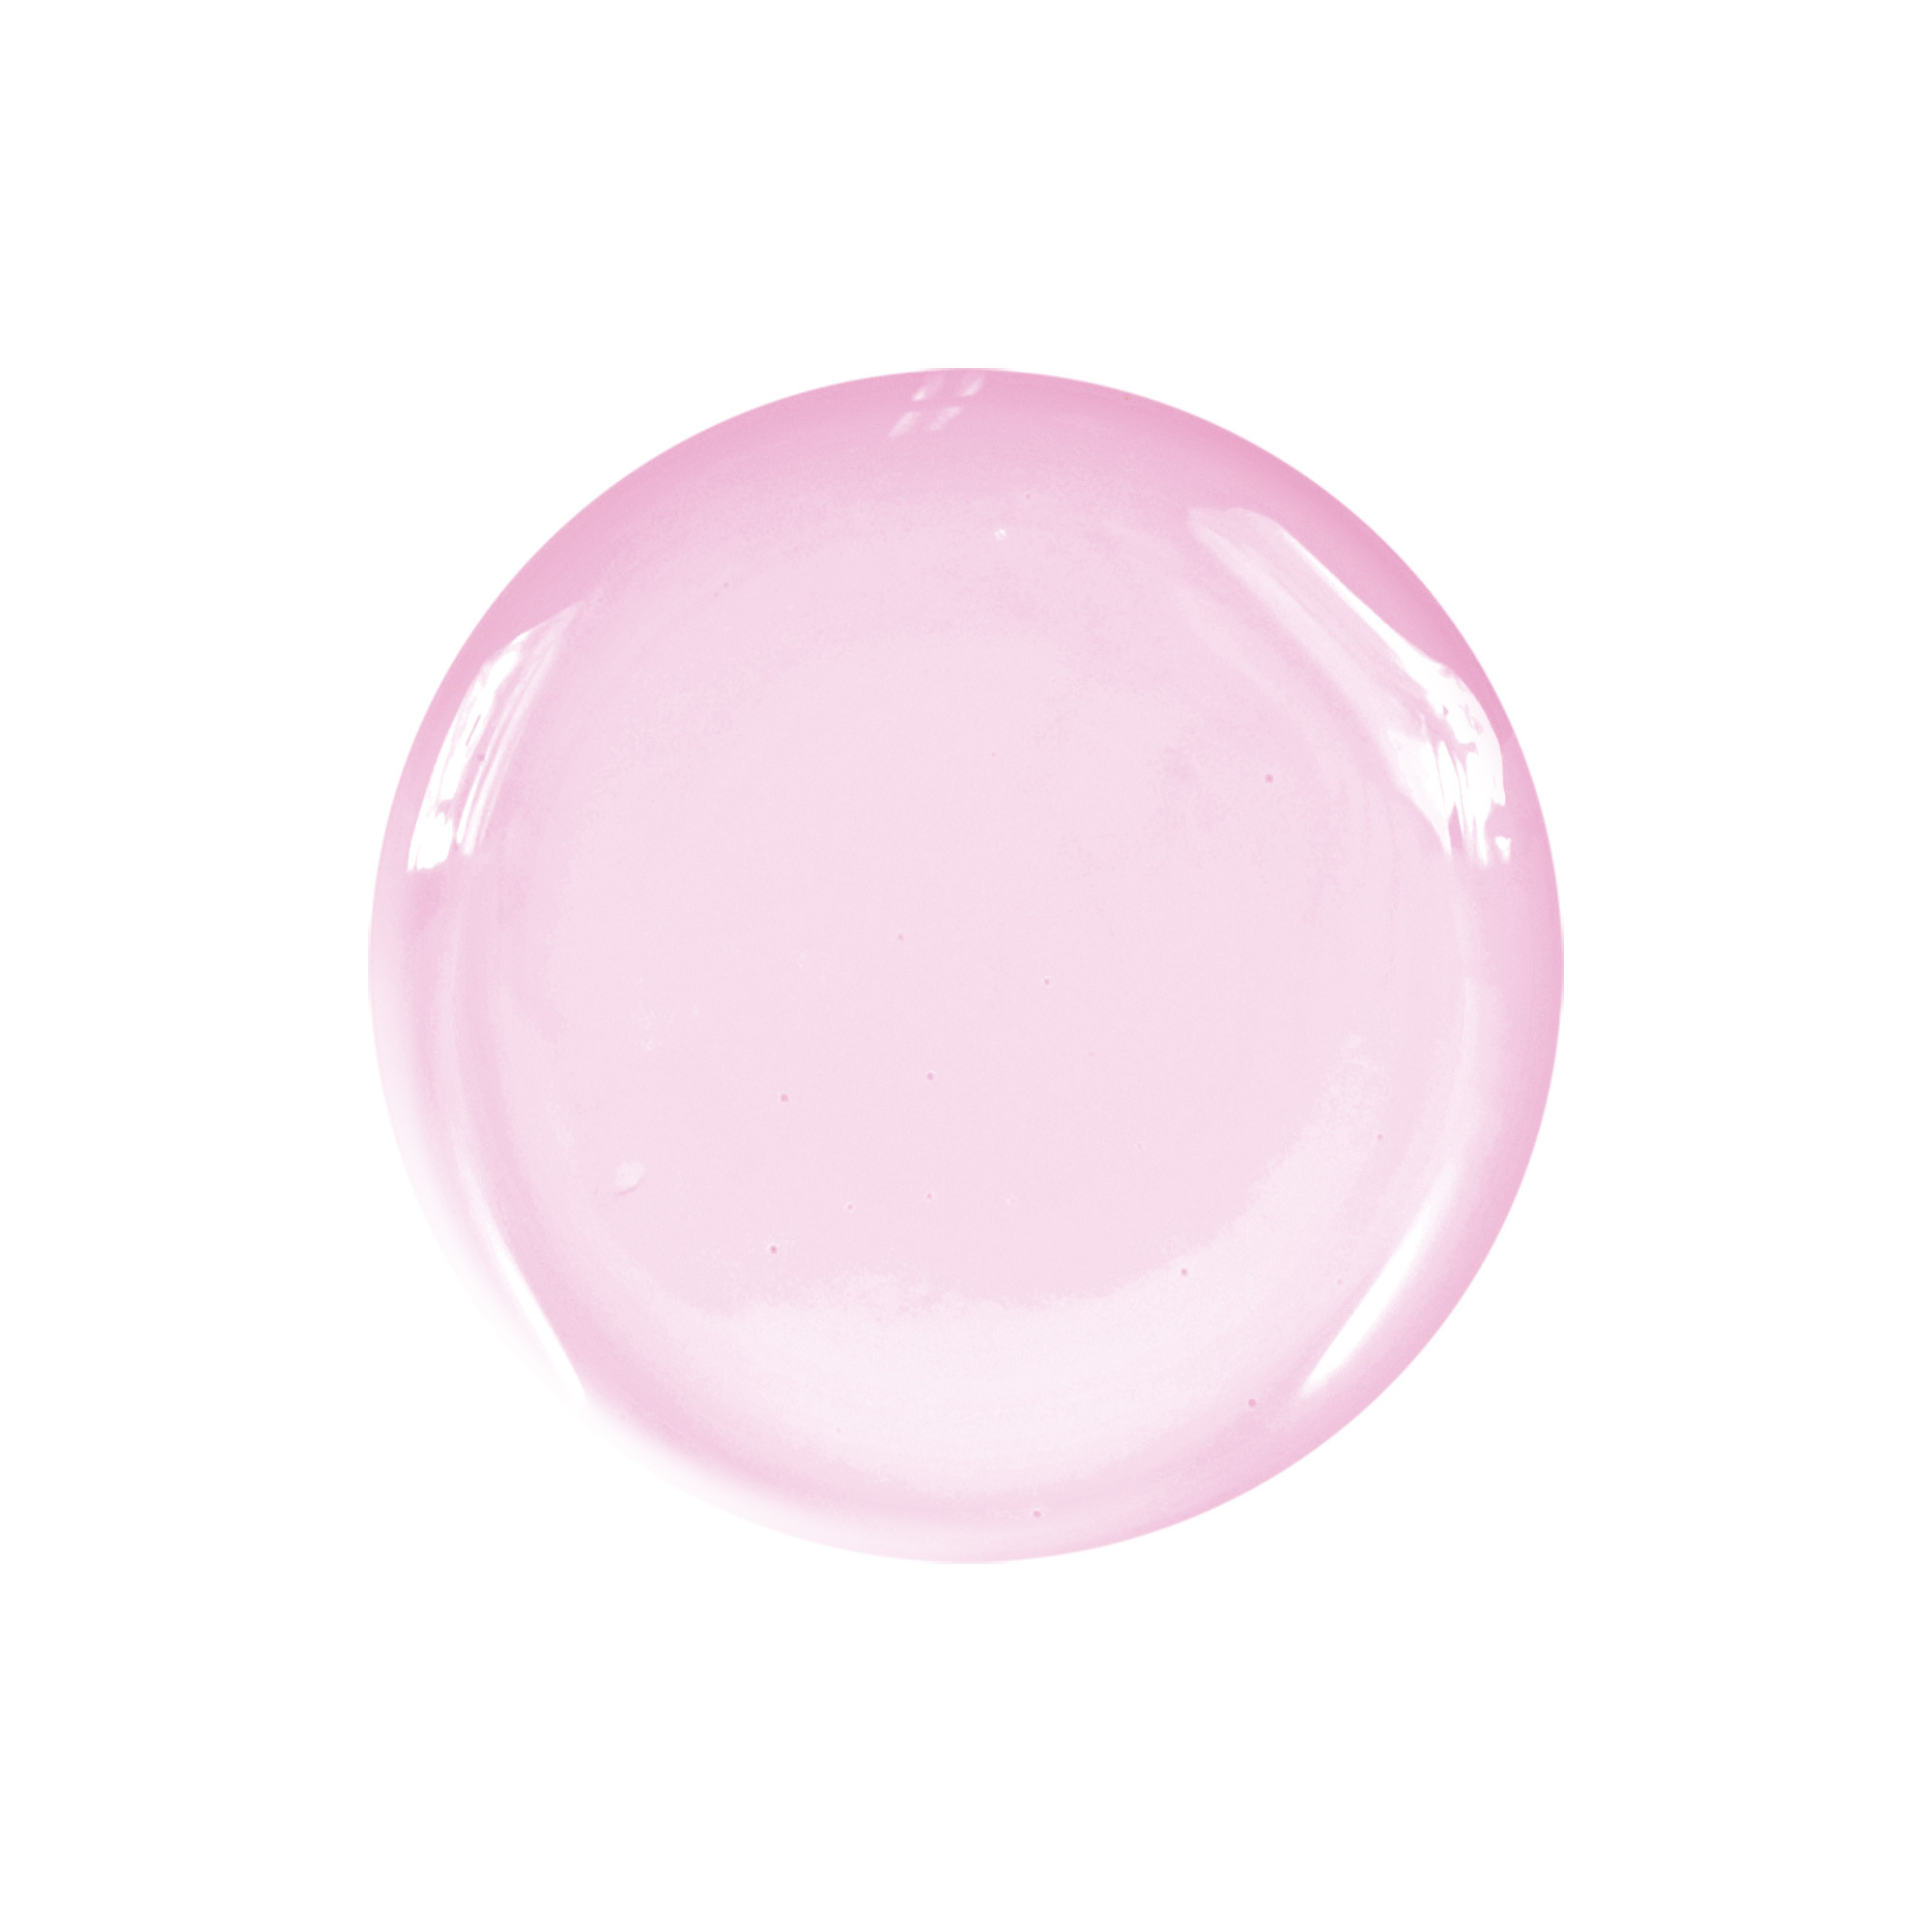 Smalto semipermanente rosa tenue Royal 10 ml Laqerìs TNS